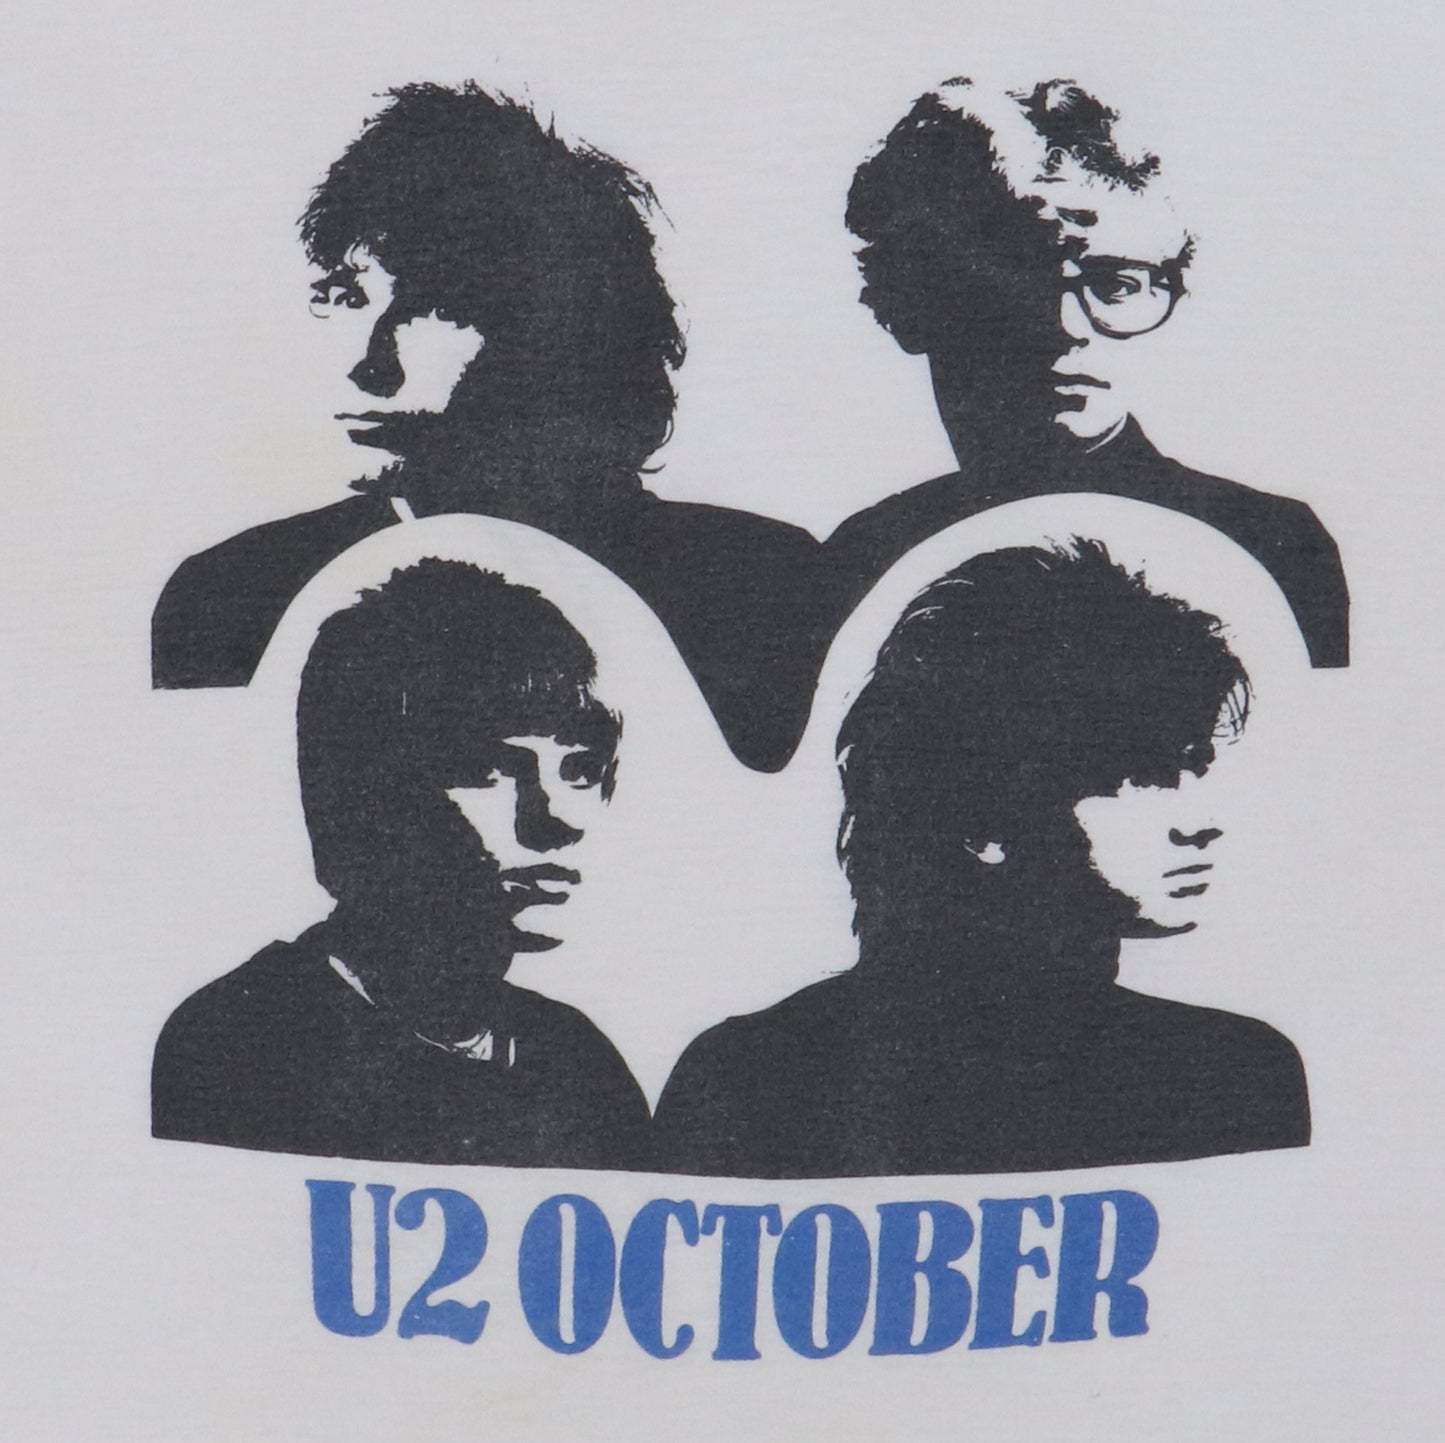 1980s U2 October Shirt